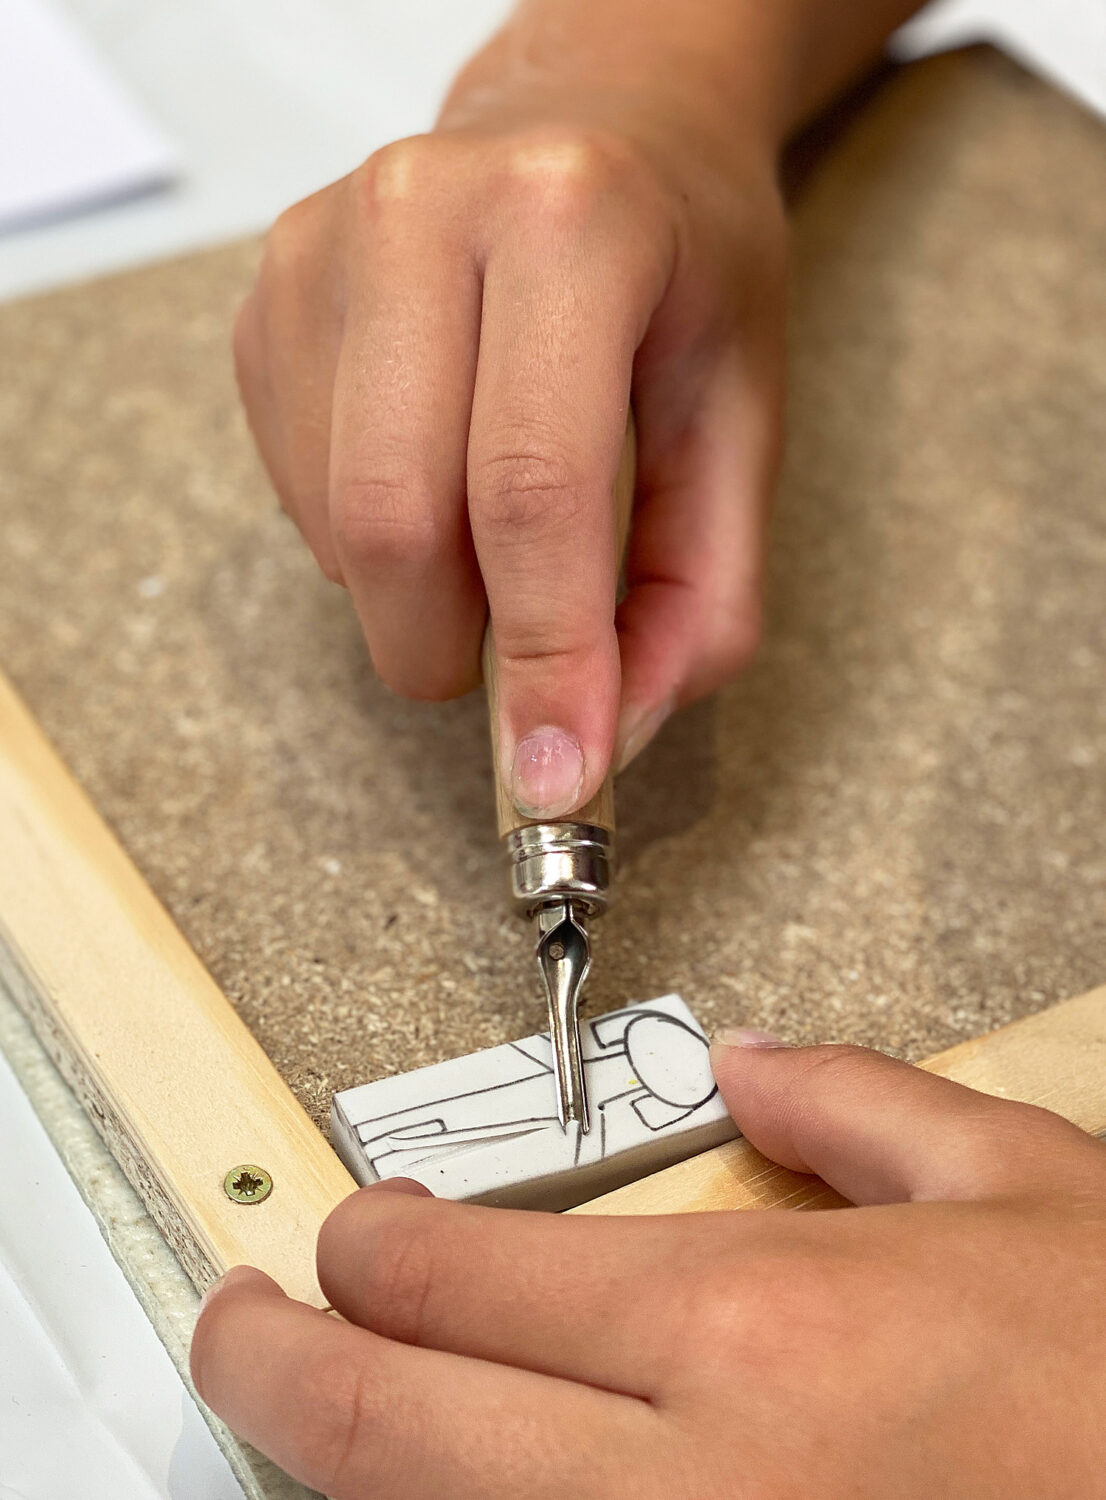 Bunte Stempelwerkstatt | Bearbeitung eines Radiergummis mit Linolschnittmesser